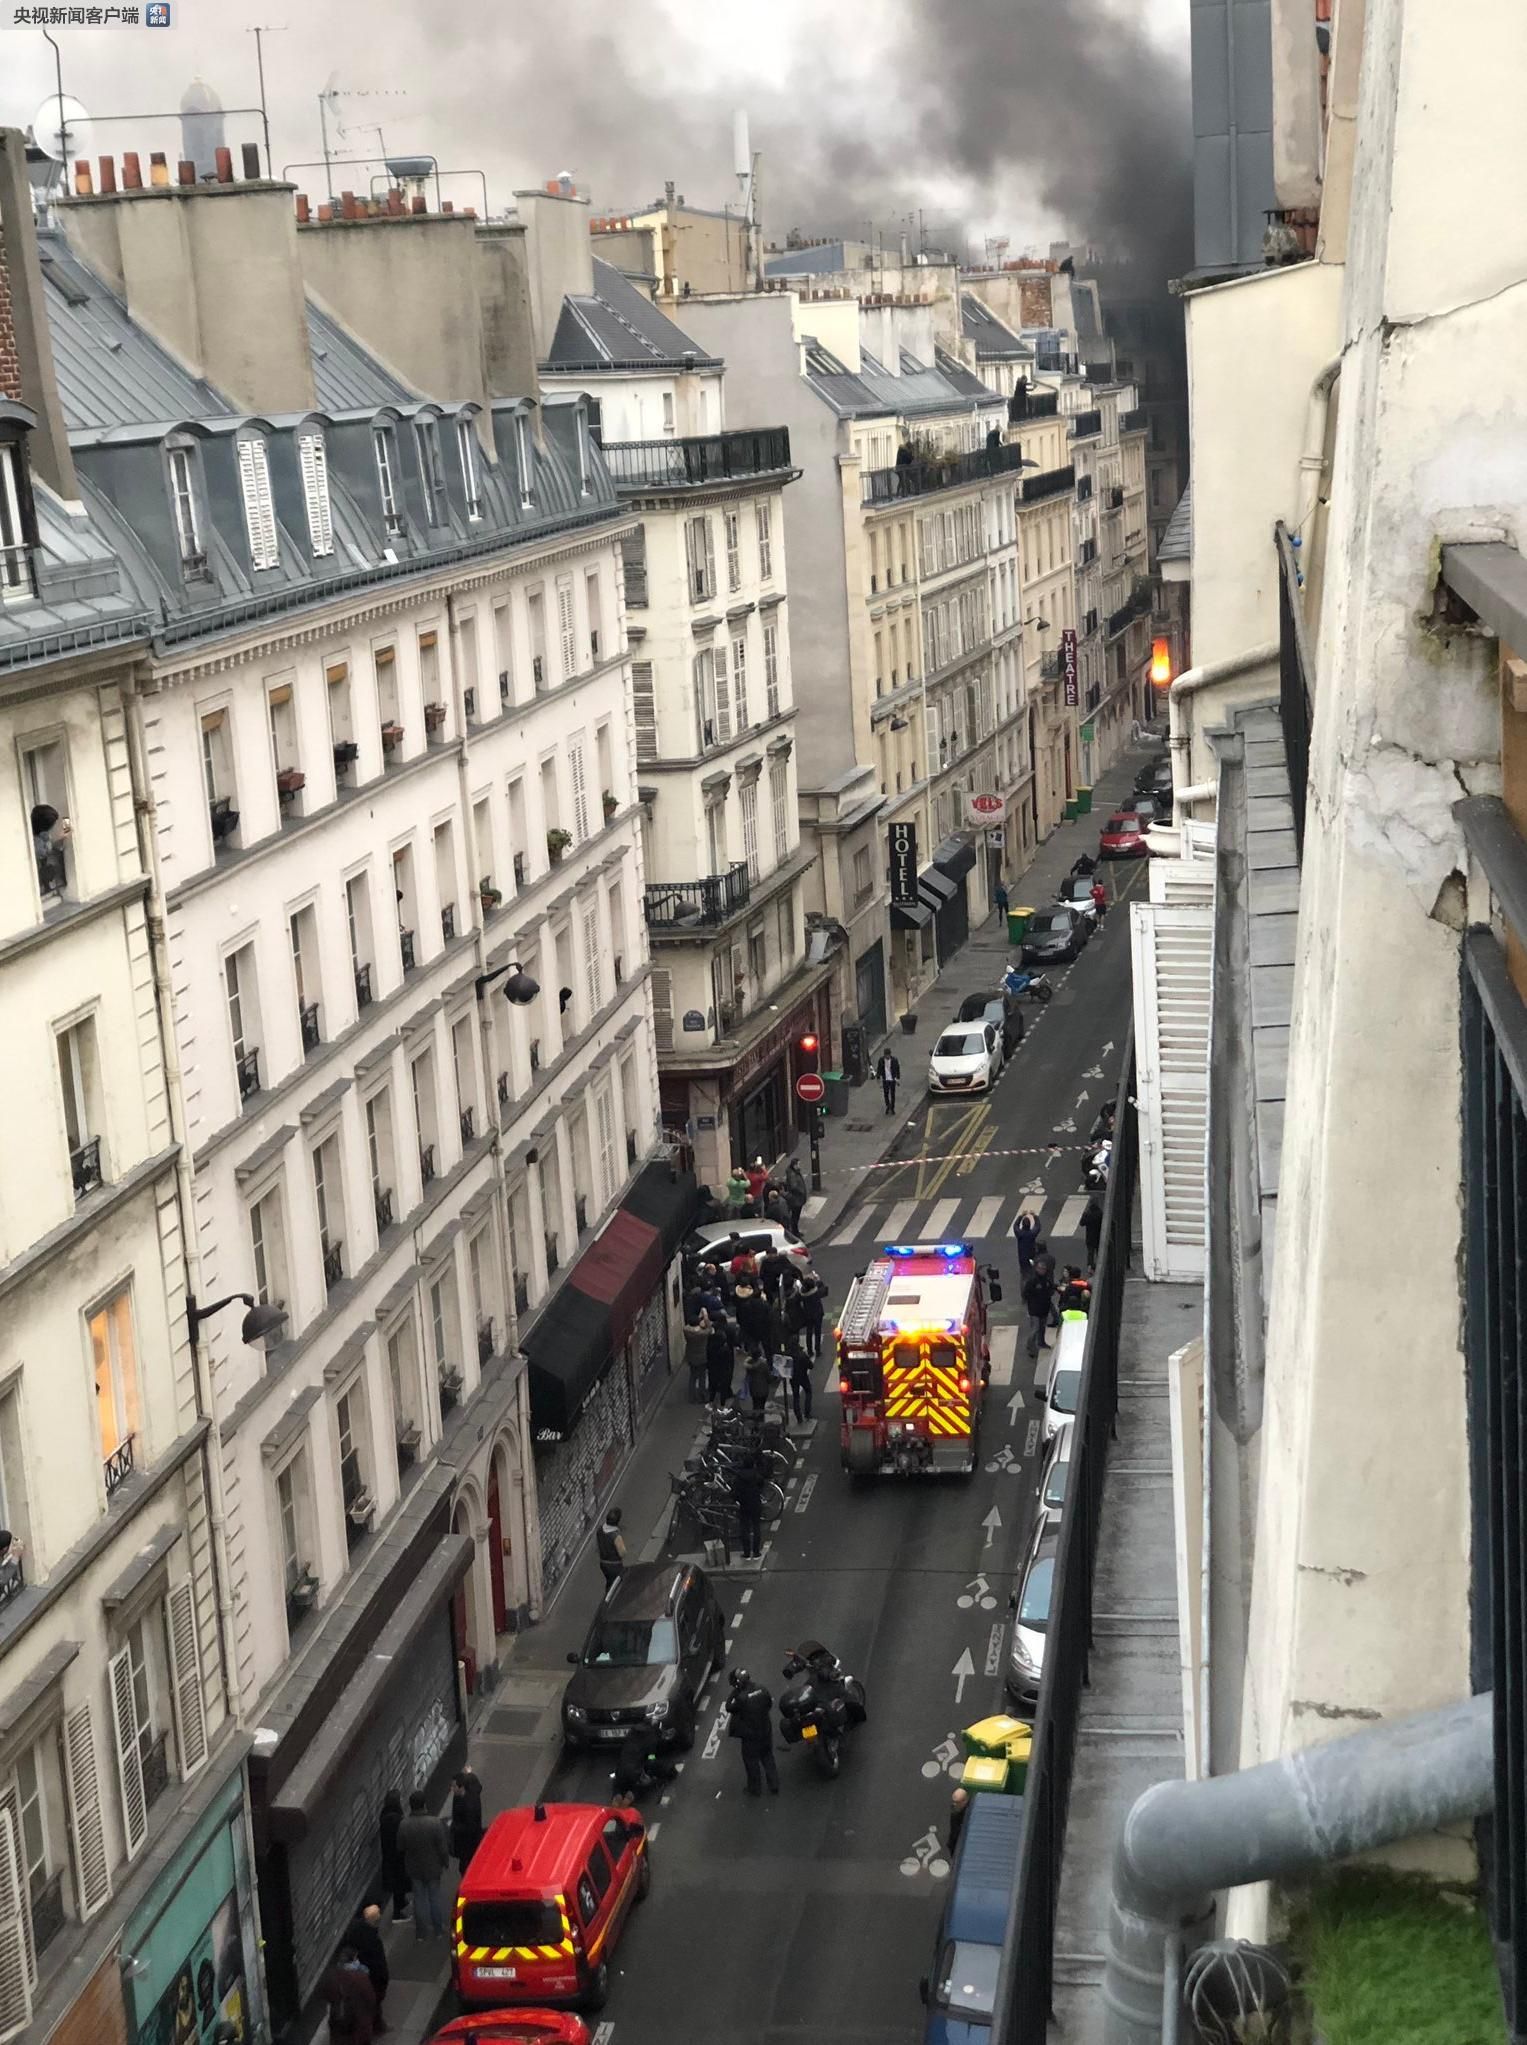 法国巴黎一家面包店发生严重爆炸 警方:由燃气